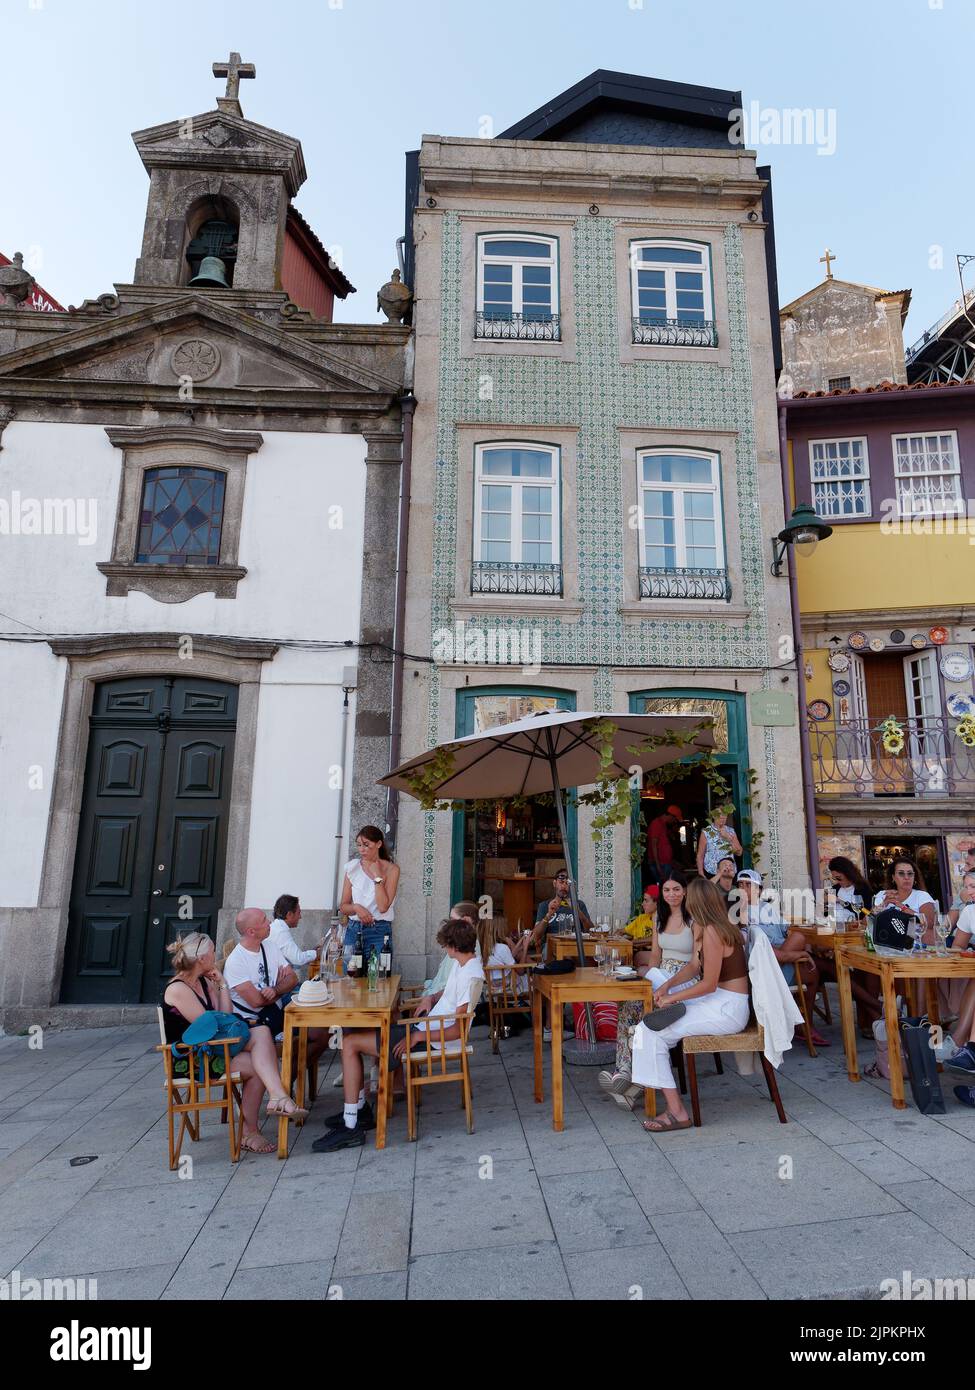 Les gens qui apprécient une soirée d'été à côté d'un restaurant, d'une église et de bâtiments de caractère dans le quartier Ribeira aka Riverside de Porto. Portugal. Banque D'Images